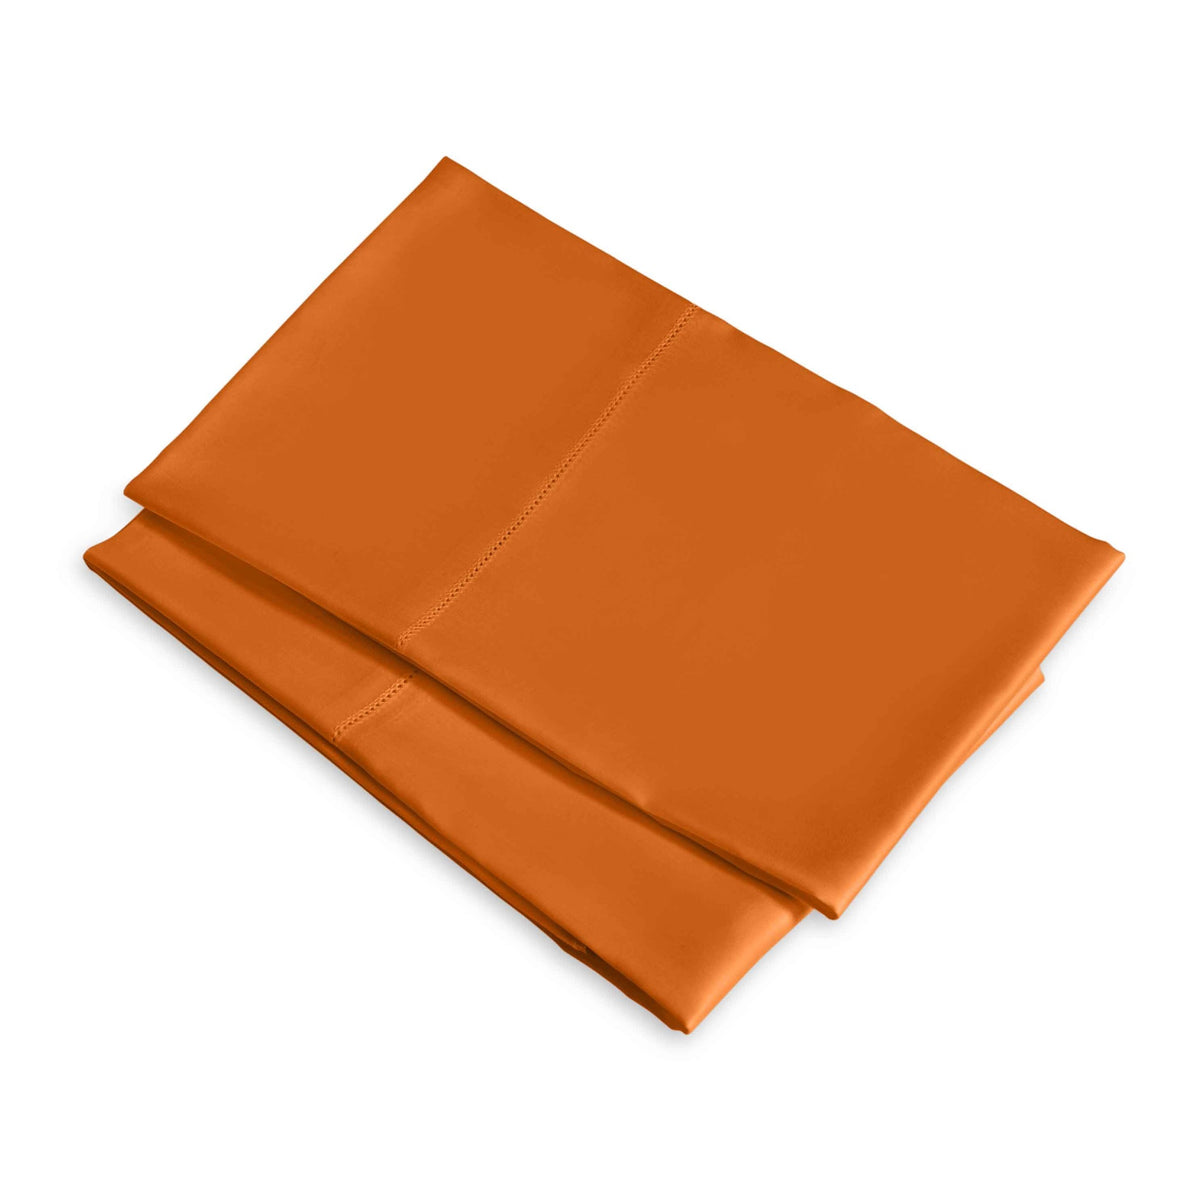 Clear Image of Signoria Raffaello Pillowcases in Rust Color